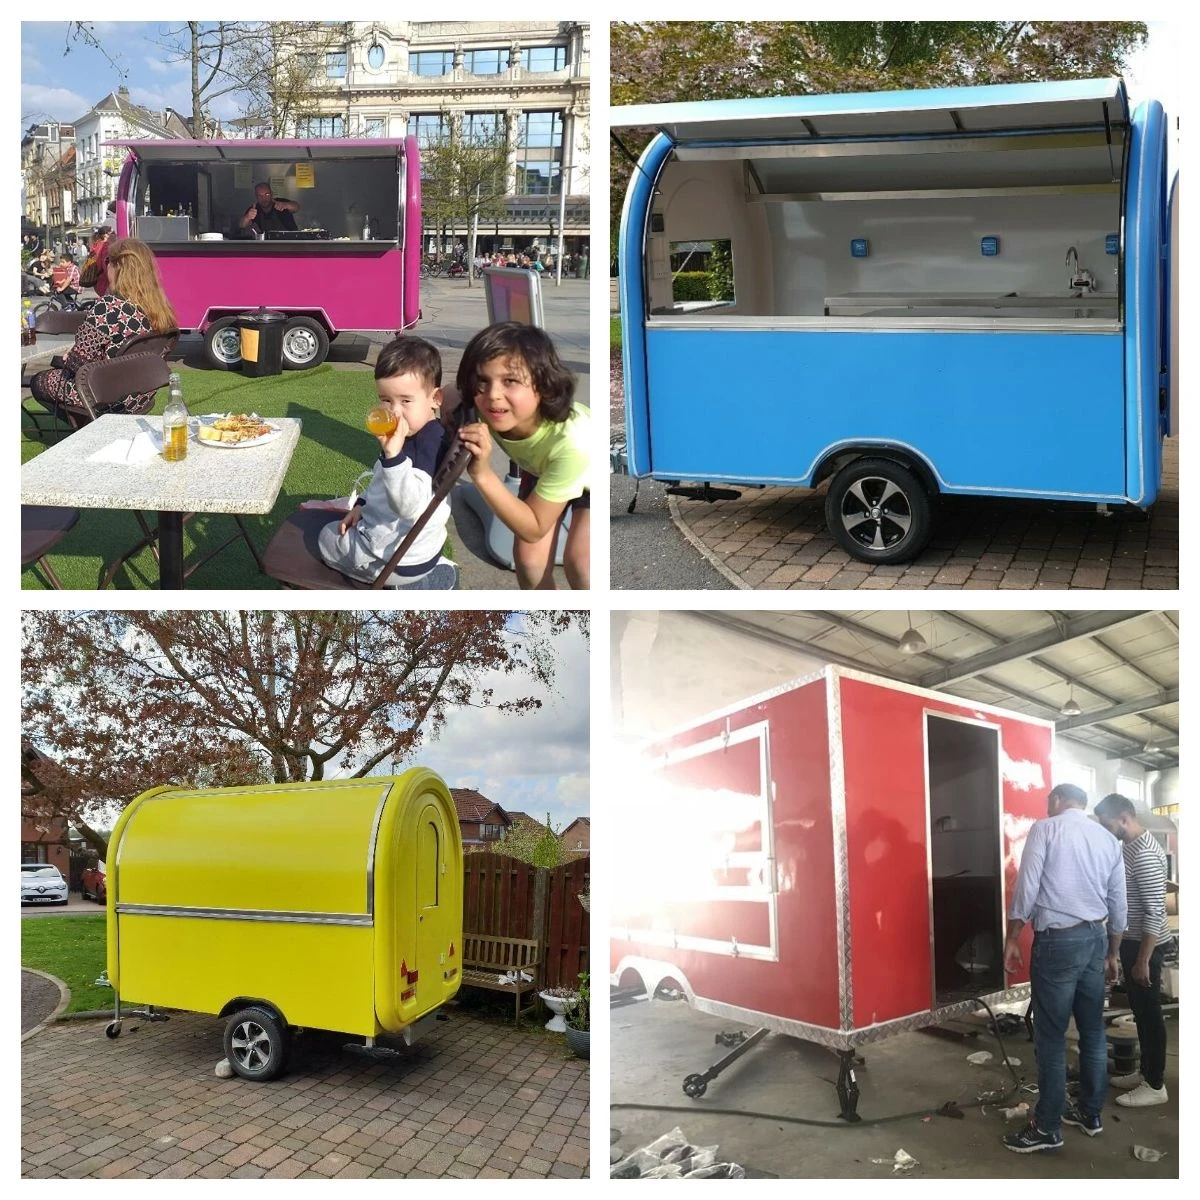 catering vans for sale autotrader